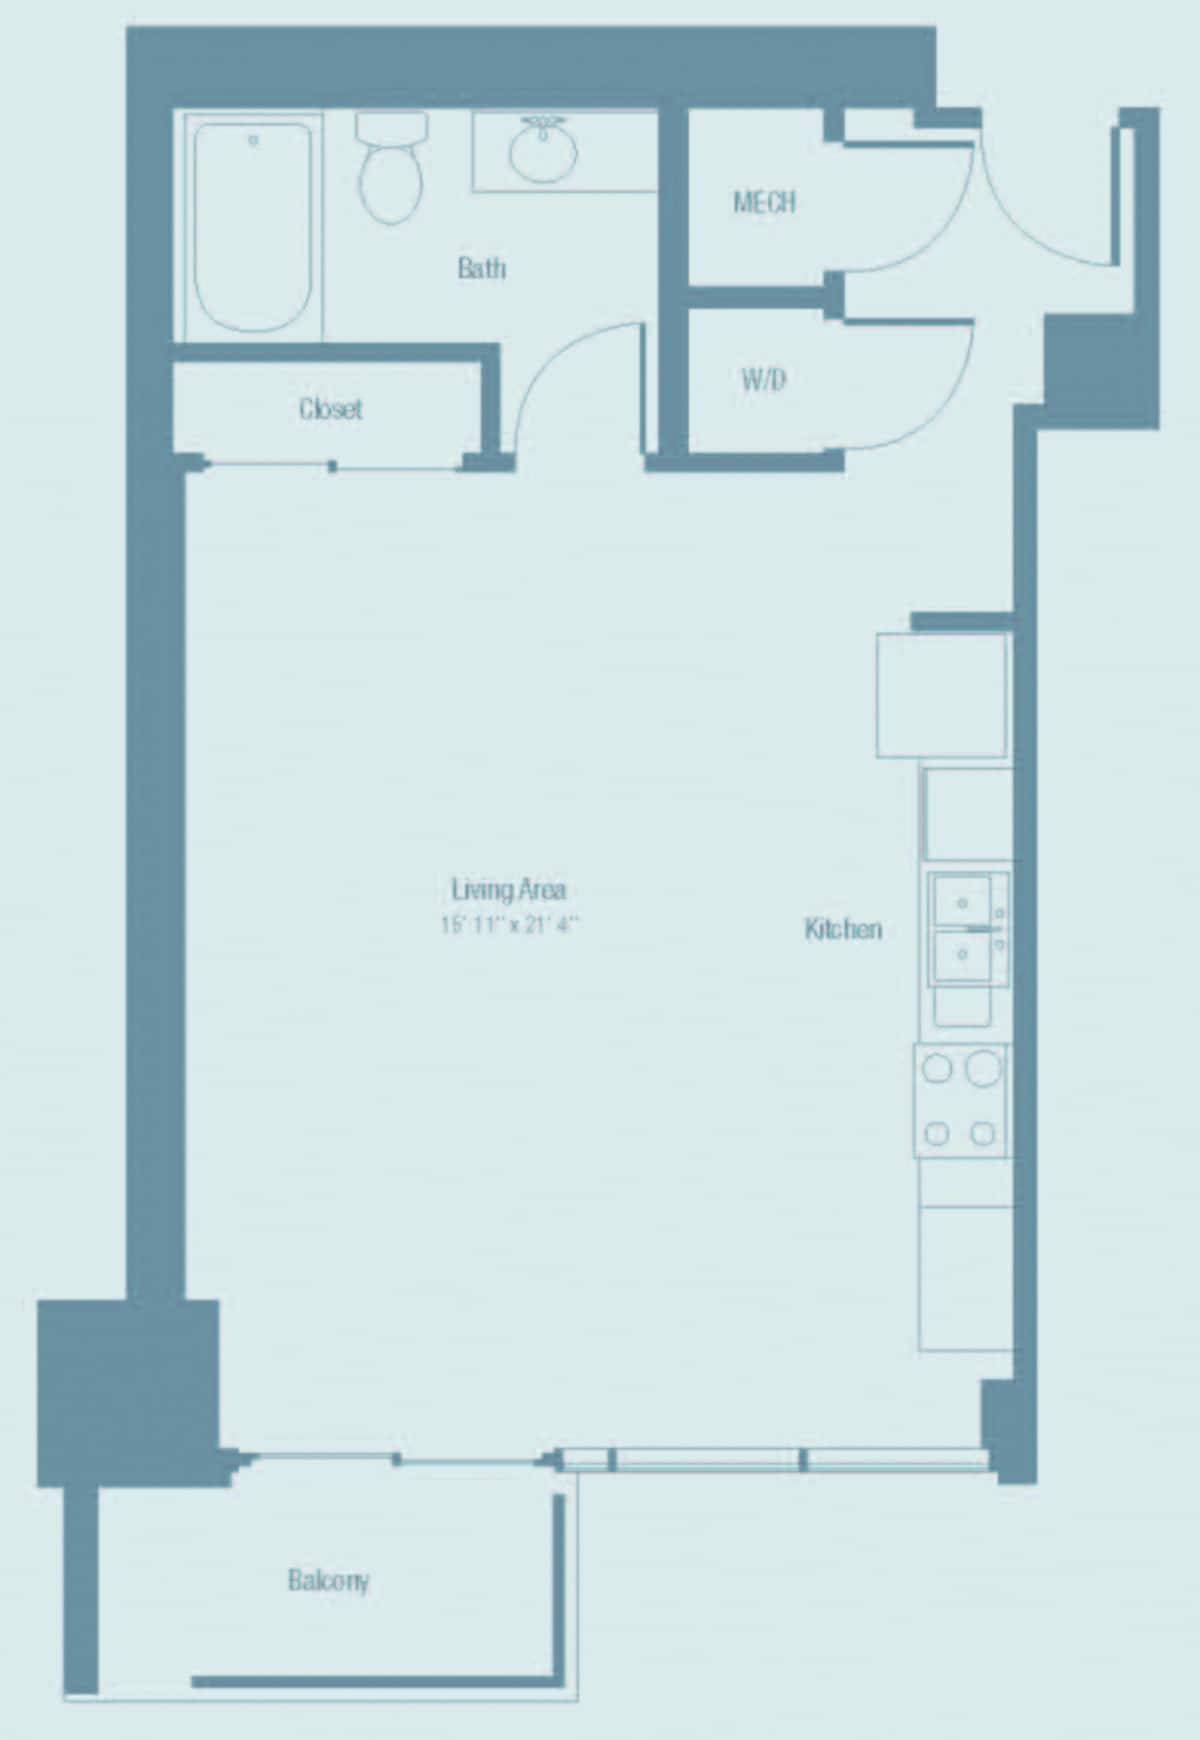 Floorplan diagram for S2, showing Studio